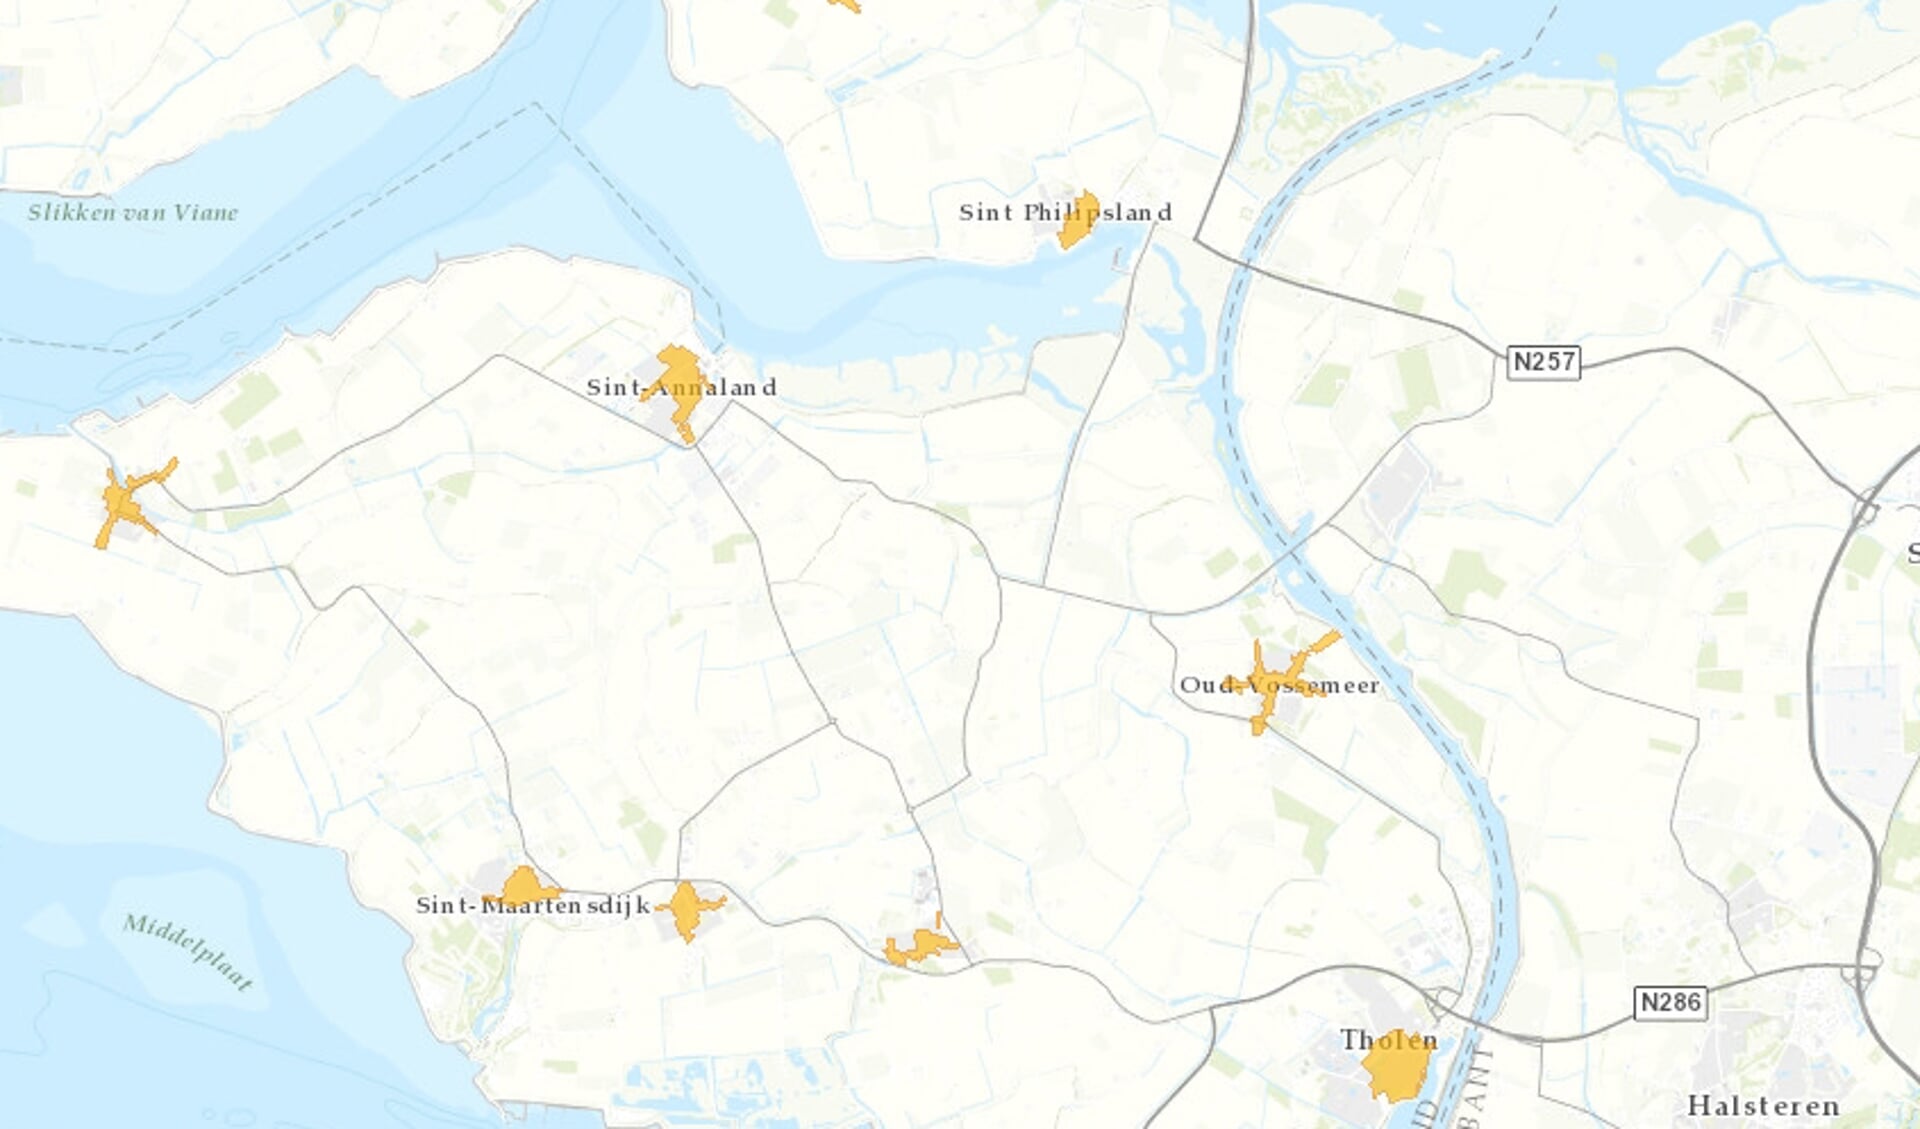 Het gaat om Tholen, Stavenisse, Sint-Annaland, Sint-Maartensdijk, Oud-Vossemeer, Sint Philipsland en Poortvliet.